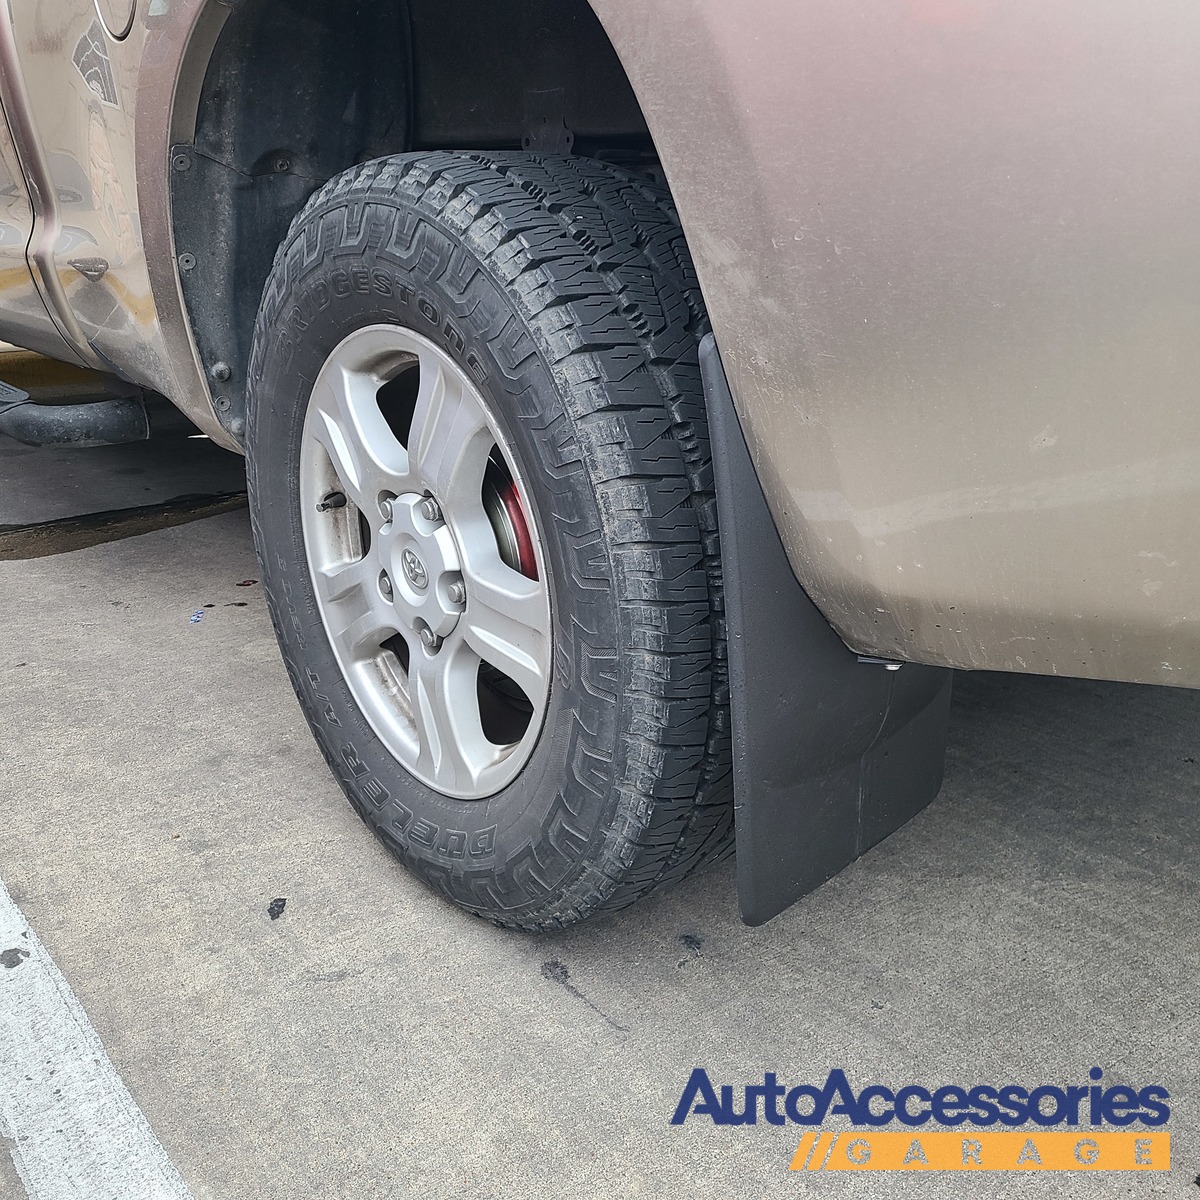 Kidlove Car Mudguards Impact-resistant Soft Rubber Mudflaps Tile Guards Mud  Flaps Auto Modification Accessories